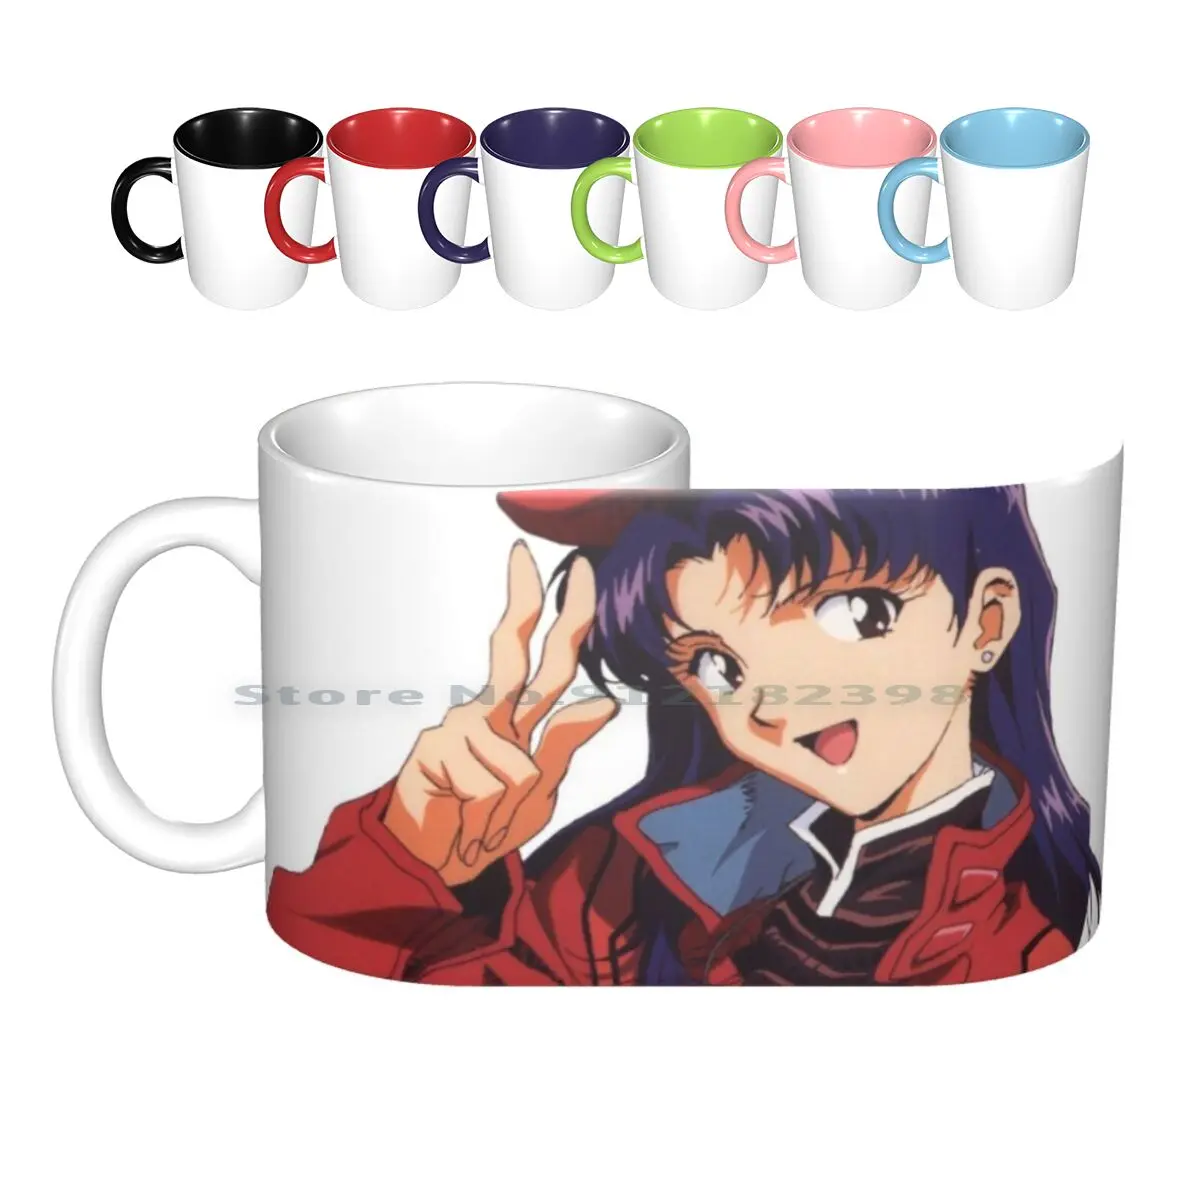 

Керамические кружки Misato Katsuragi-Girl, кофейные чашки, Кружка для молока и чая, привлекательная аниме девушка из аниме Nup Misato Katsuragi, креативная